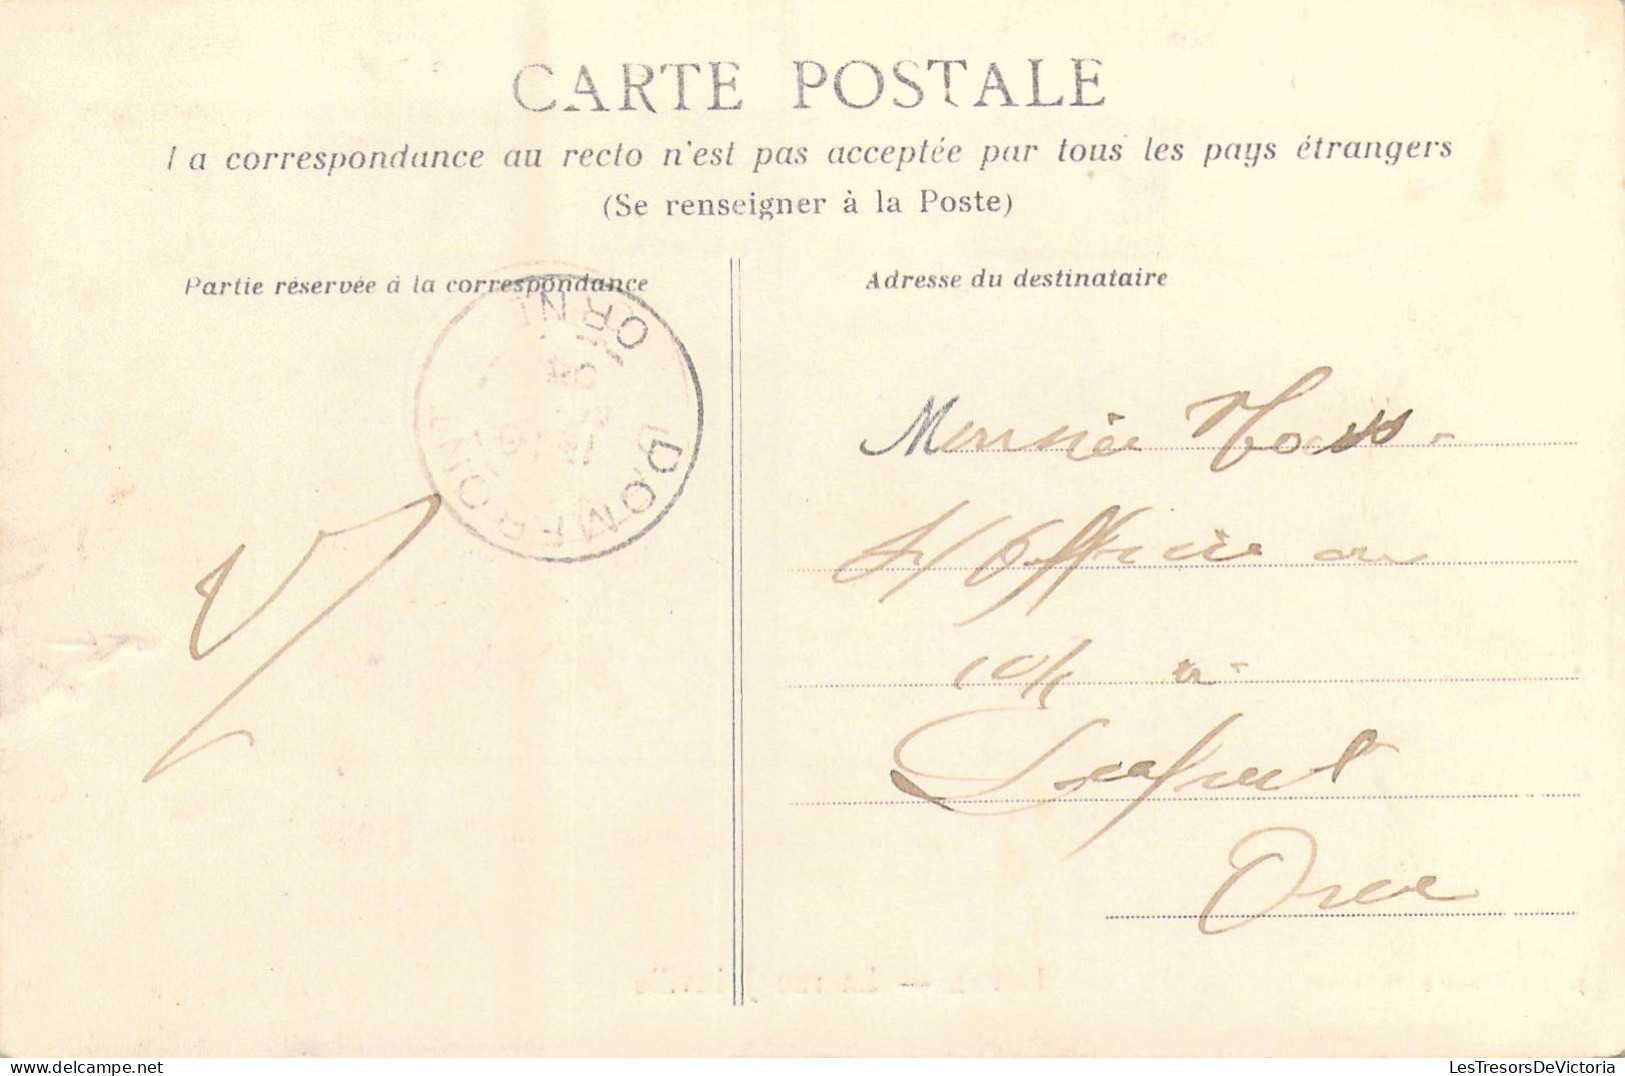 FRANCE - 53 - Laval - La Rue Joinville - Carte Postale Ancienne - Laval